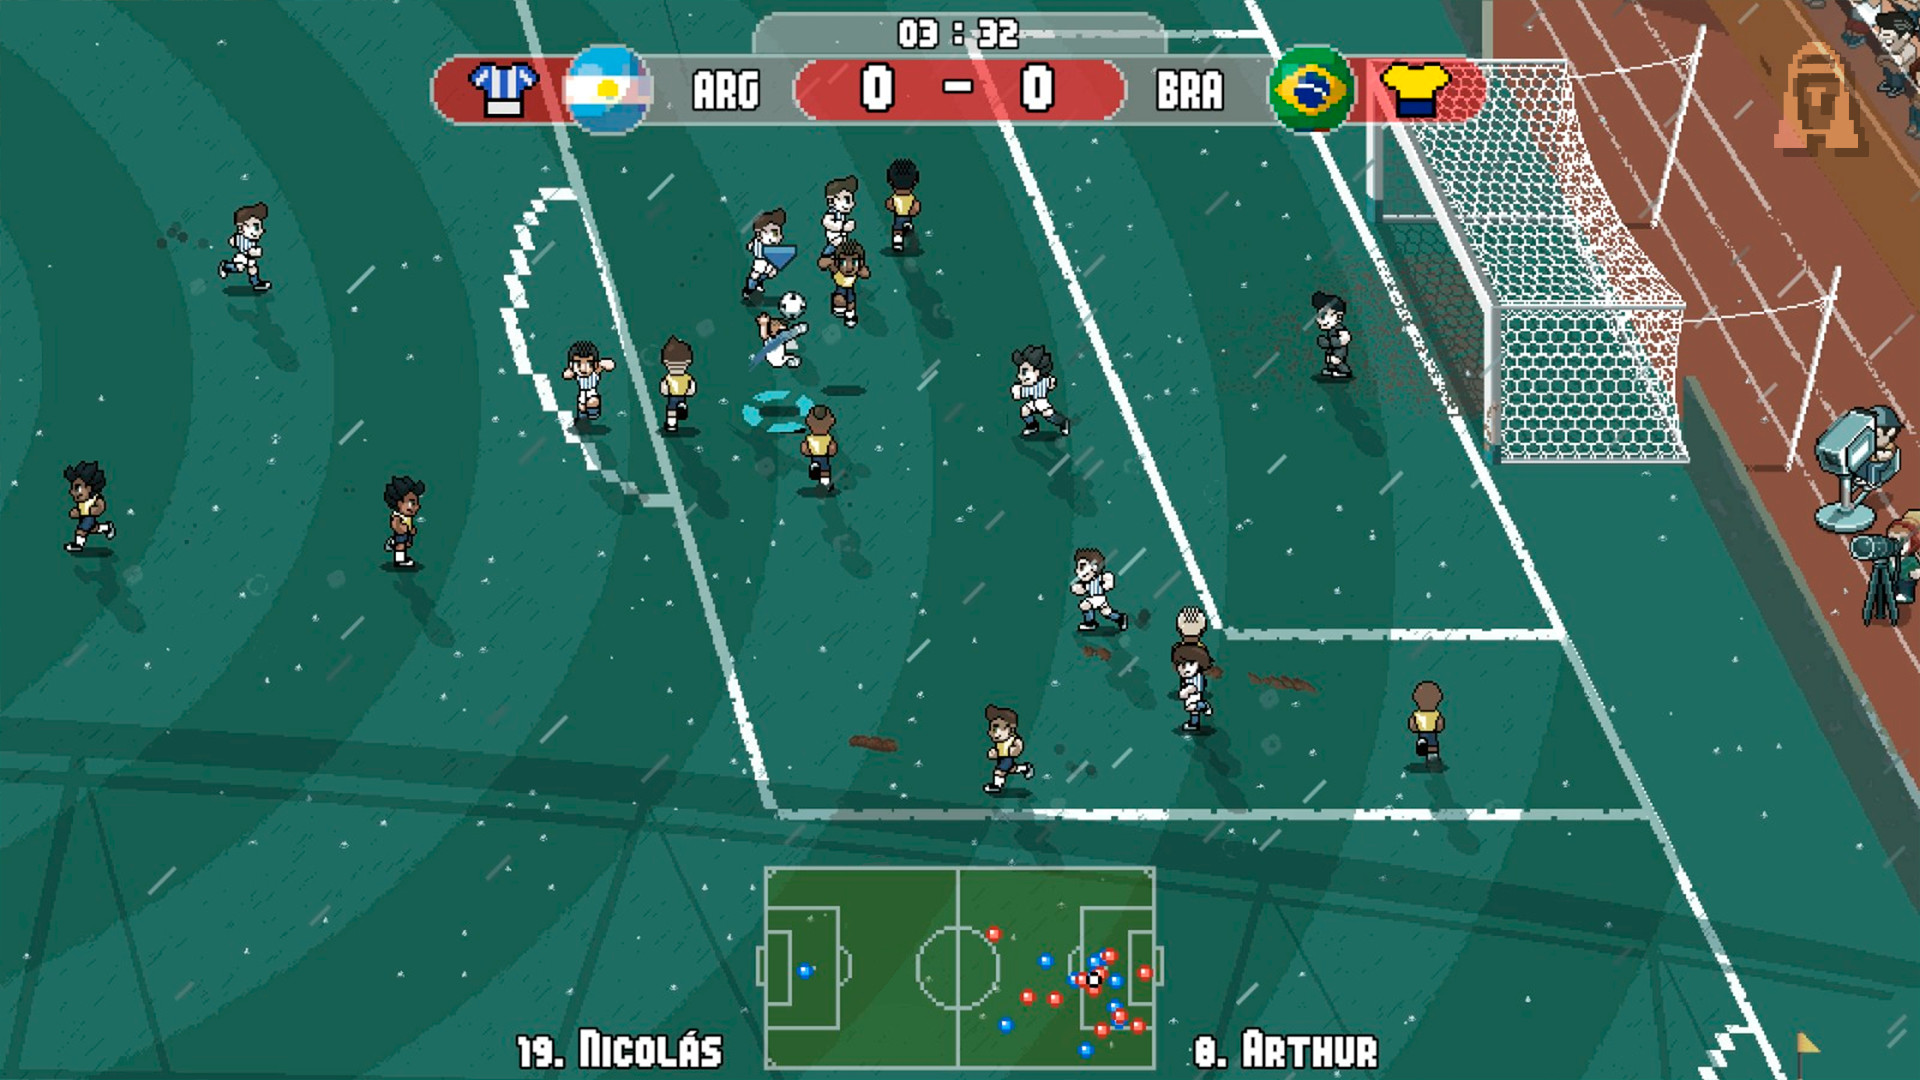 He descubierto 3 videojuegos de fútbol en TikTok que no tienen nada que ver  con FIFA y que se juegan de forma completamente distinta - Pixel Cup Soccer  - Ultimate Edition - 3DJuegos